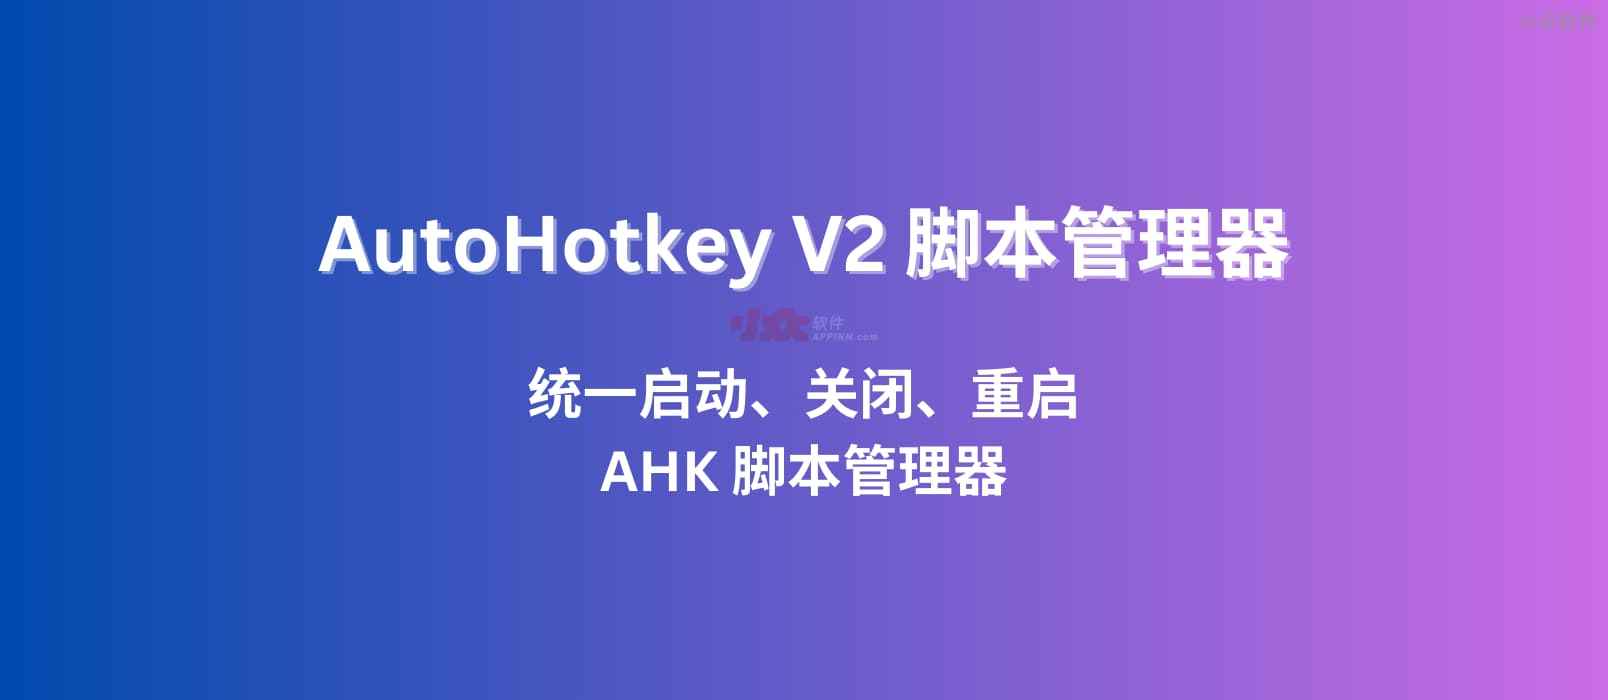 AHK2Manager – 基于 AutoHotKey V2，统一启动、关闭、重启 AHK 脚本管理器